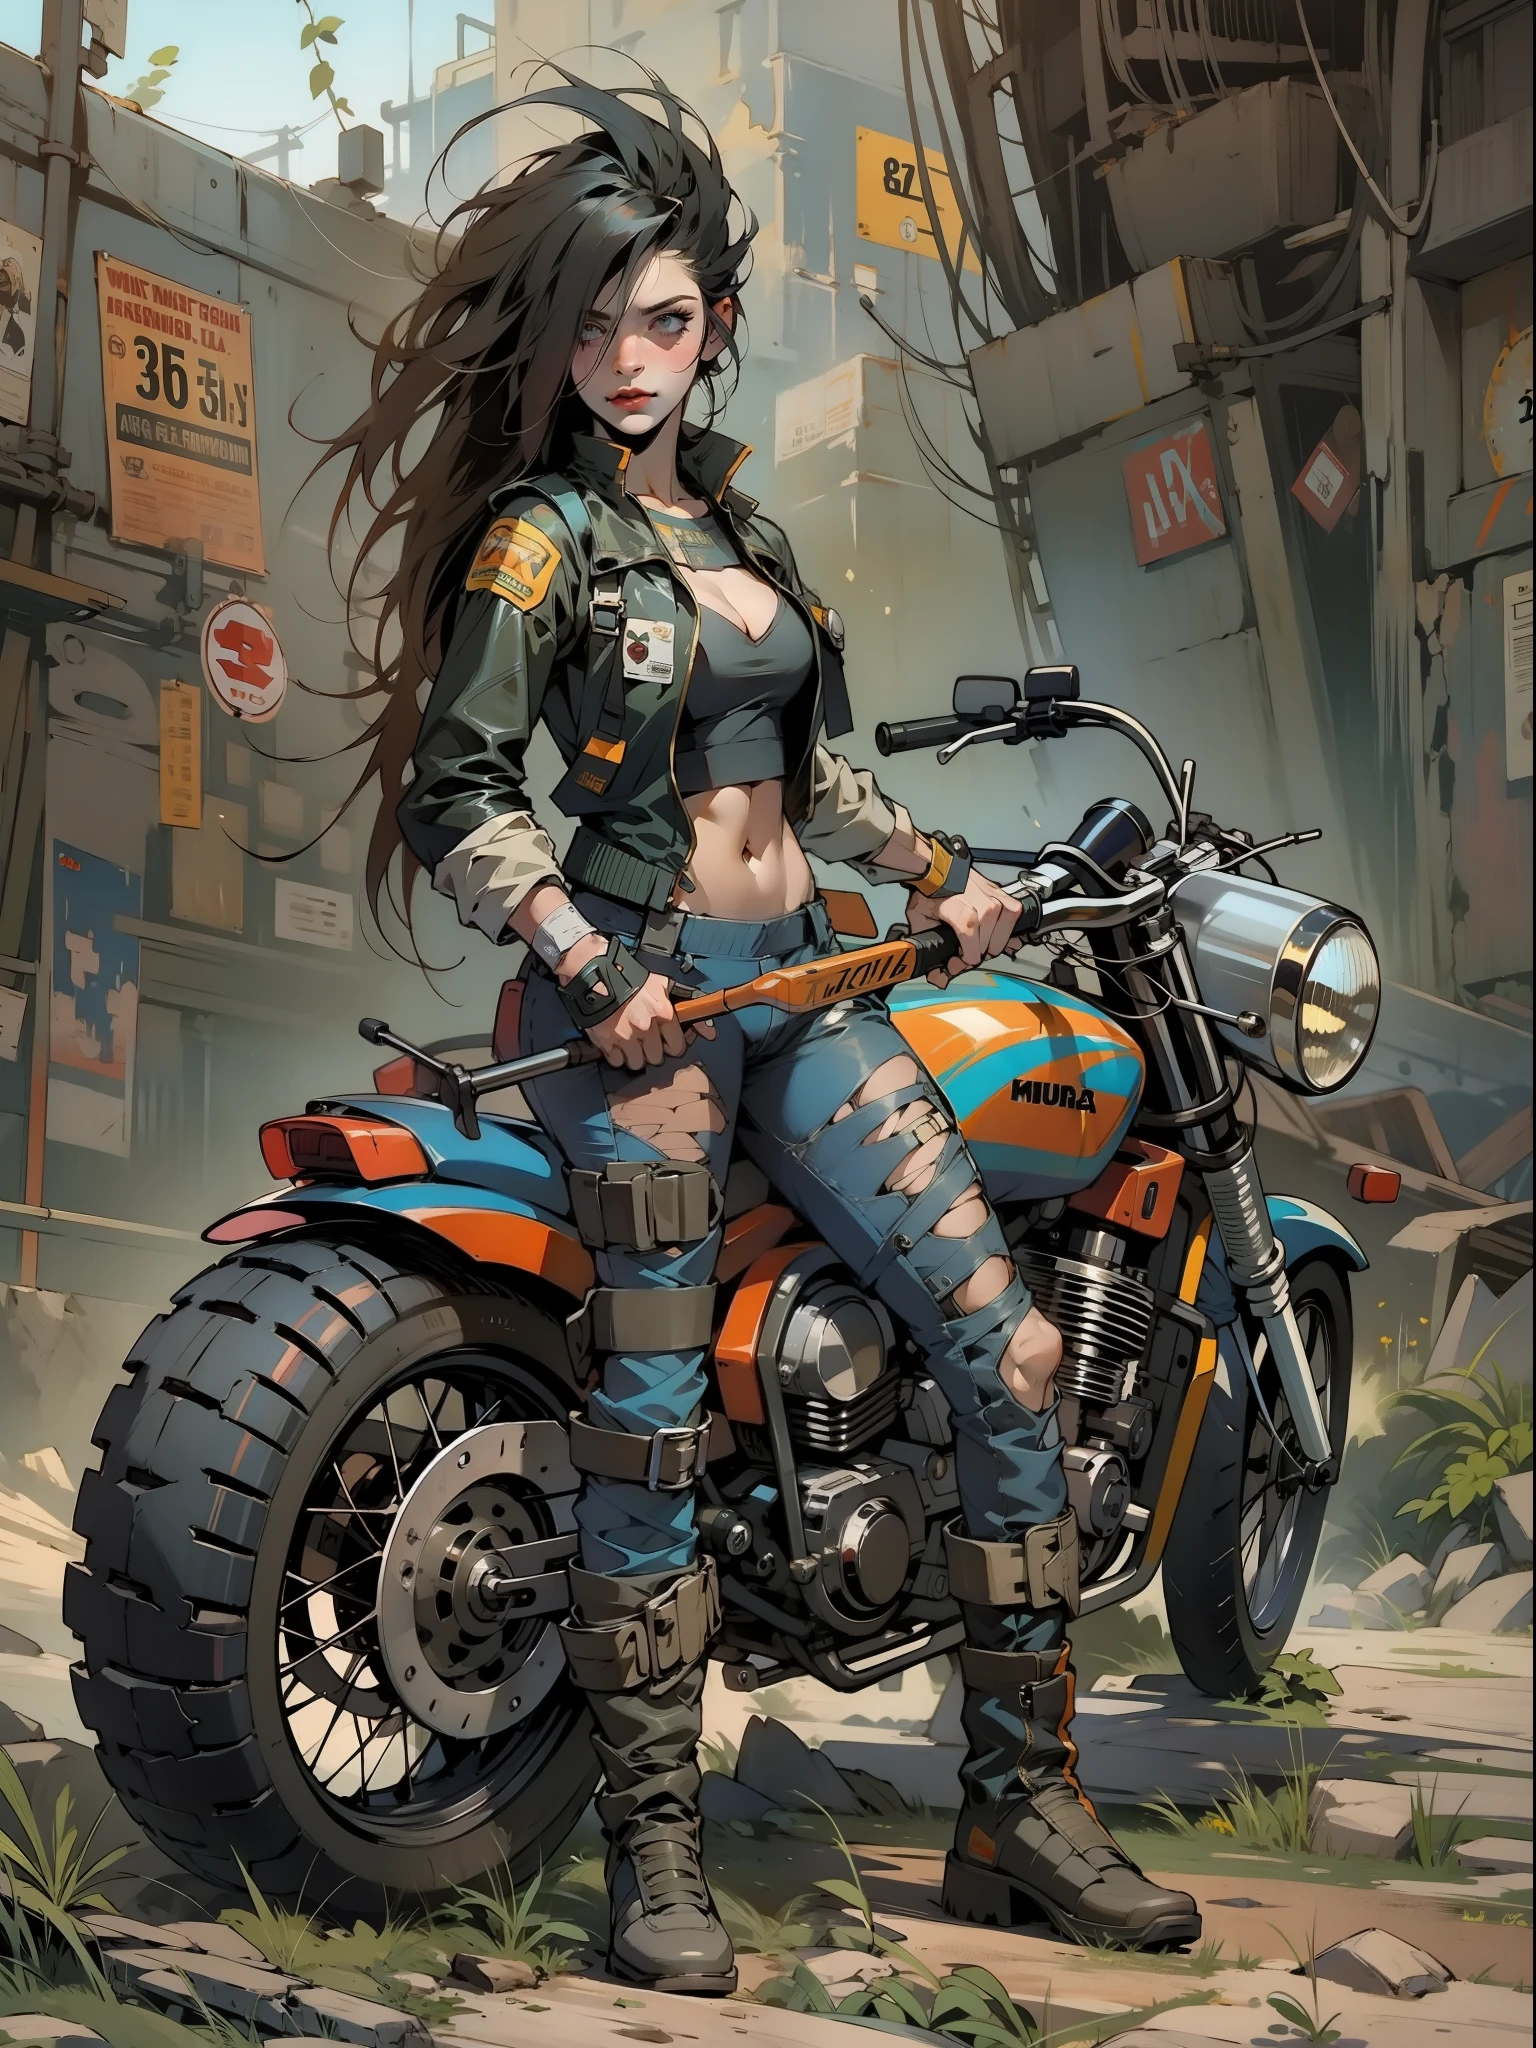 Un guerrier post-apocalyptique, gros plan sur une femme de 35 ans presque nue, style Simon Bisley, sur une moto futuriste usée par le temps;, cheveux mohawk colorés, Vêtements minimum, Vêtements courts,